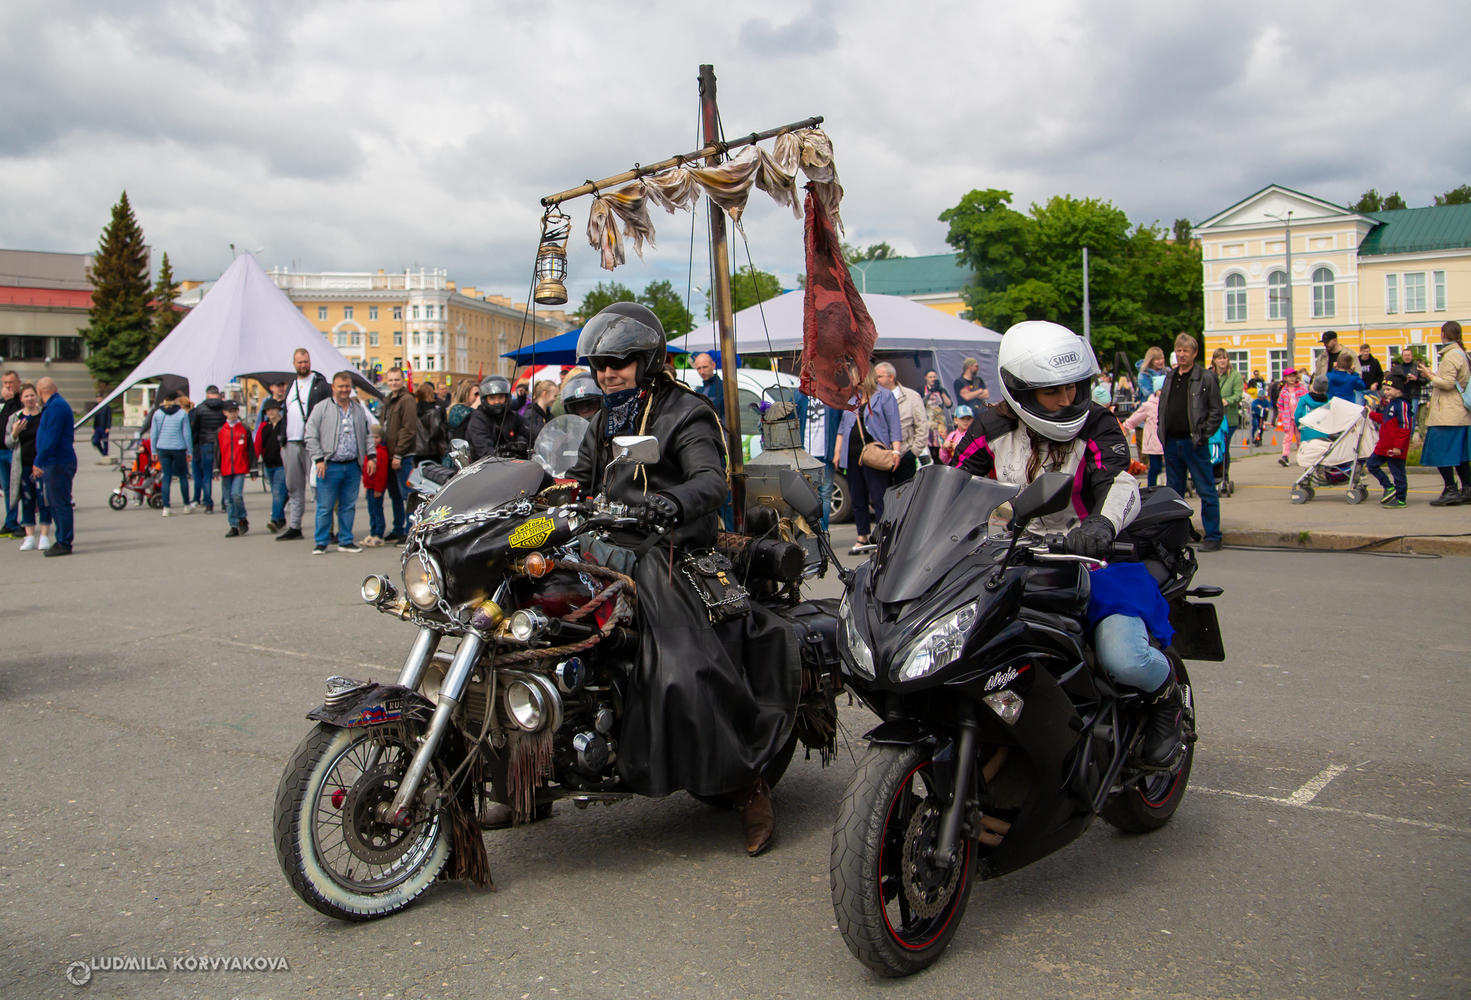 Дух байкерства зашкаливал на фестивале мототехники в Петрозаводске